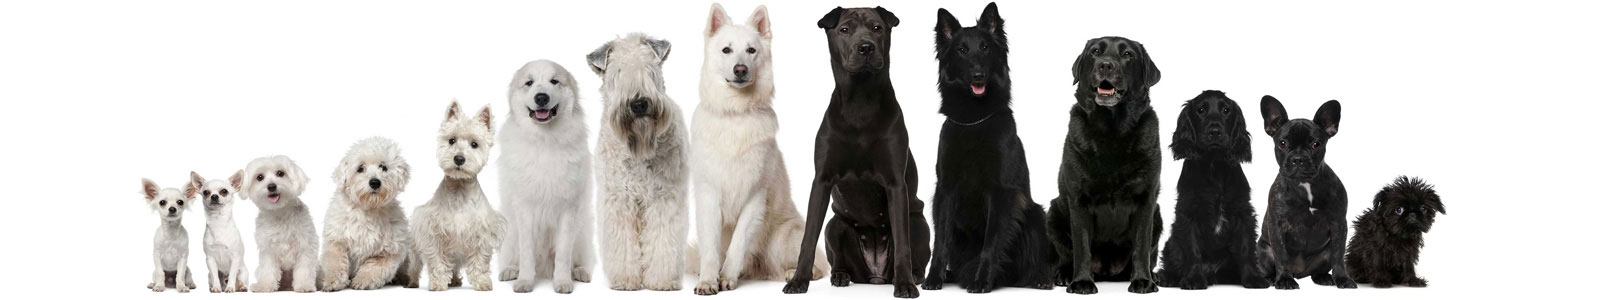 №2788 - Ряд черных и белых собак на белом фоне